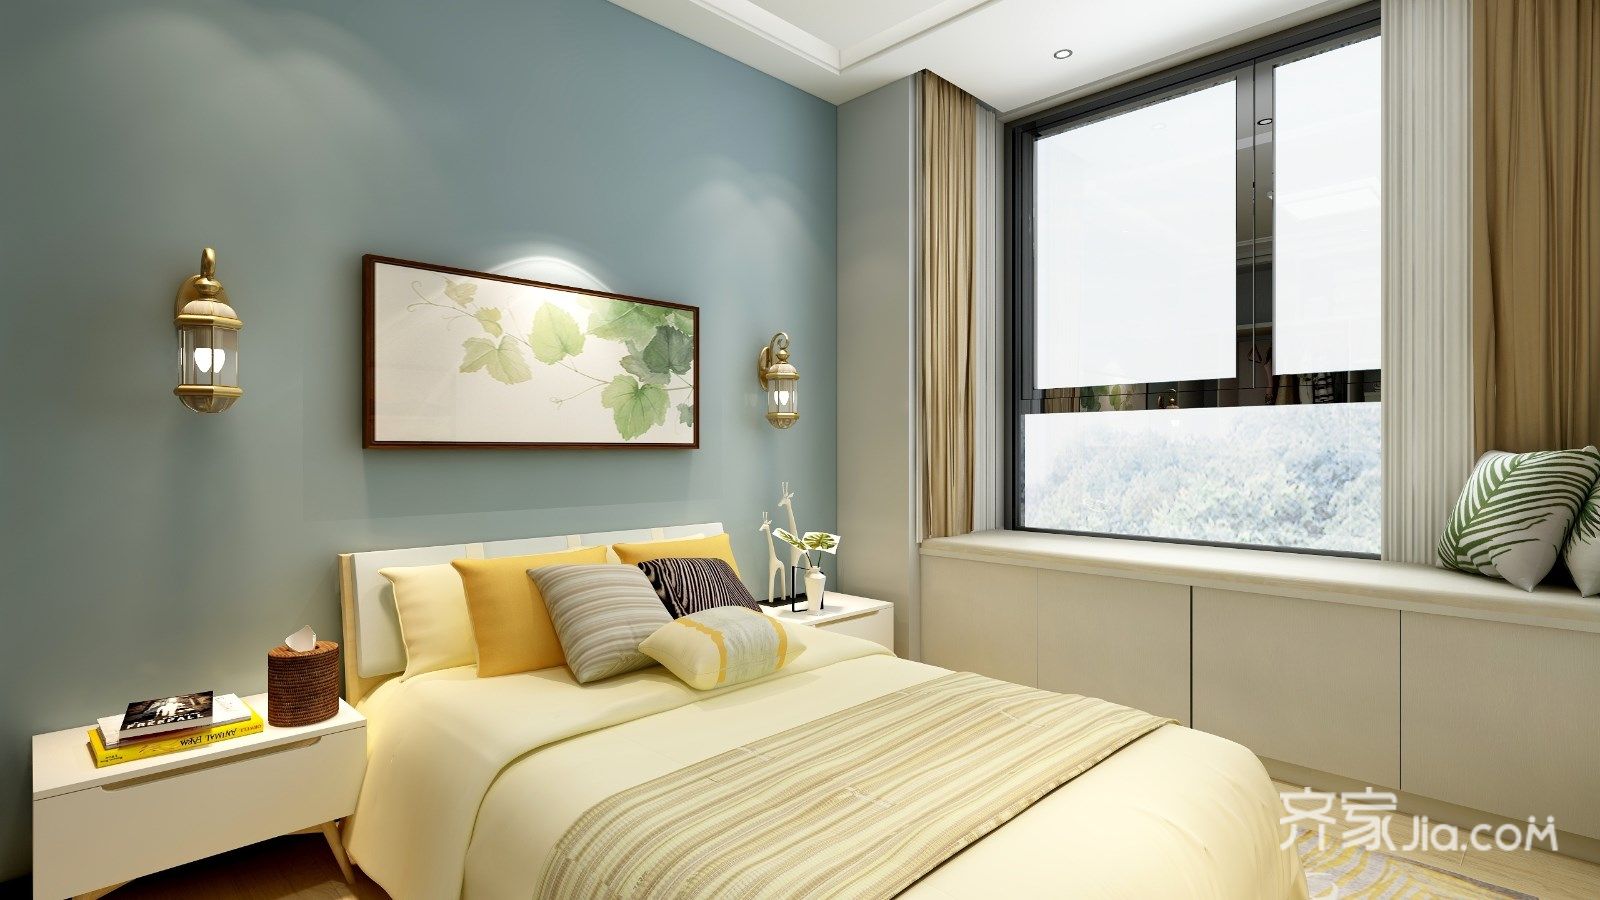 5-10万装修,二居室装修,80平米装修,简约风格,卧室,卧室背景墙,蓝色